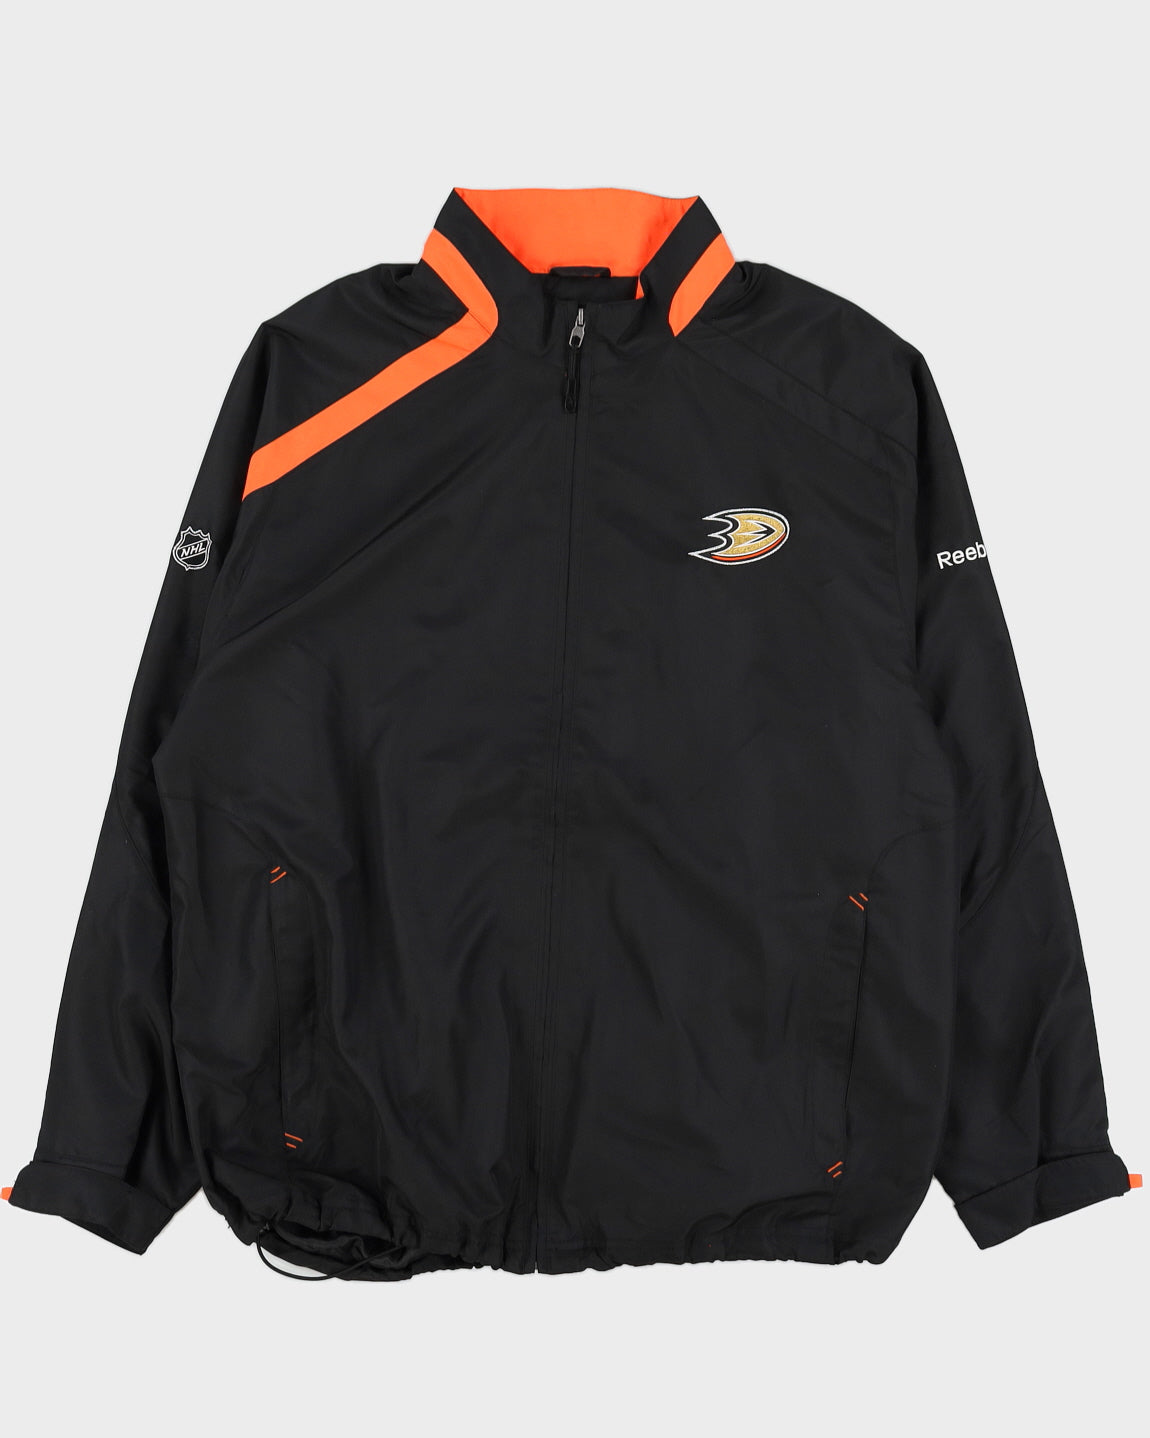 Reebok NHL Anaheim Ducks Jacket - L